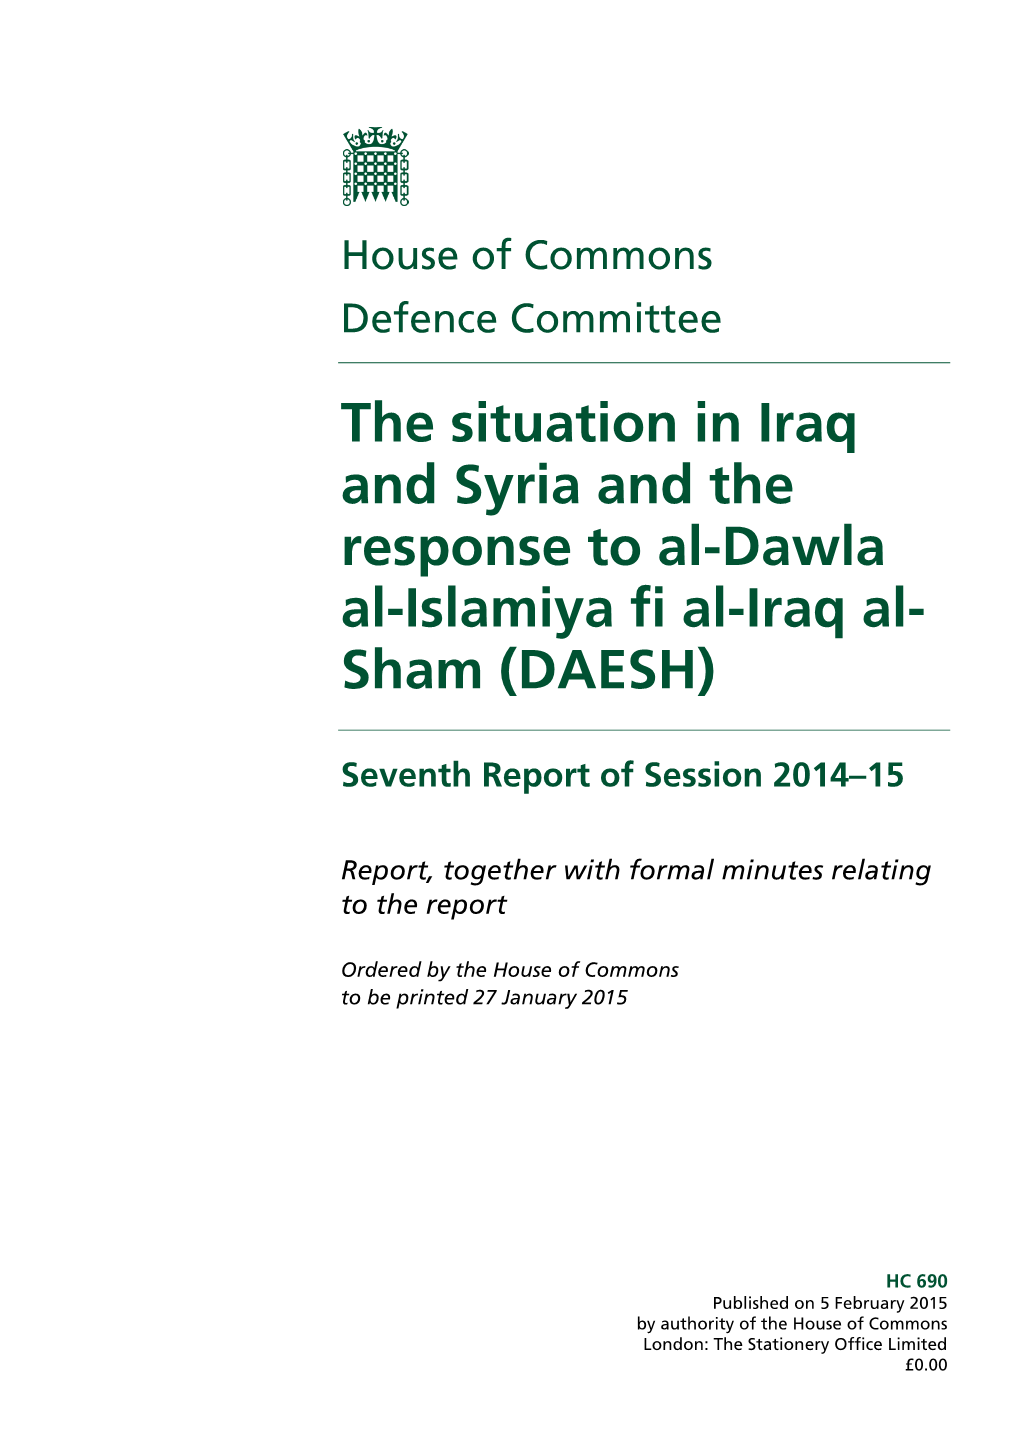 The Situation in Iraq and Syria and the Response to Al-Dawla Al-Islamiya Fi Al-Iraq Al- Sham (DAESH)